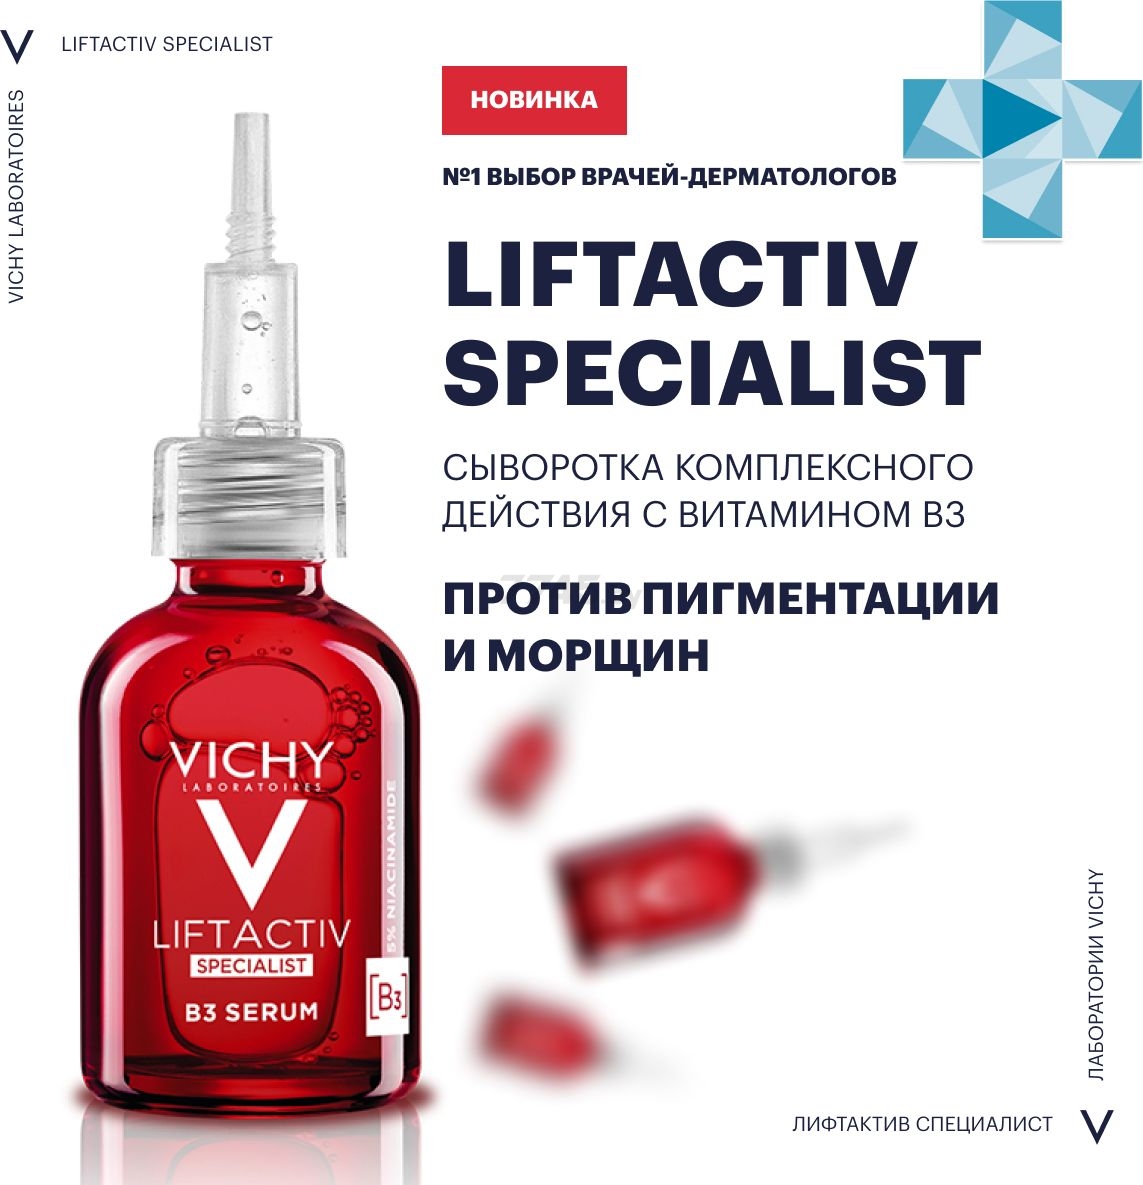 Сыворотка VICHY Liftactiv Specialist комплексного действия с витамином В3 против пигментации и морщин 30 мл (0370355108) - Фото 4